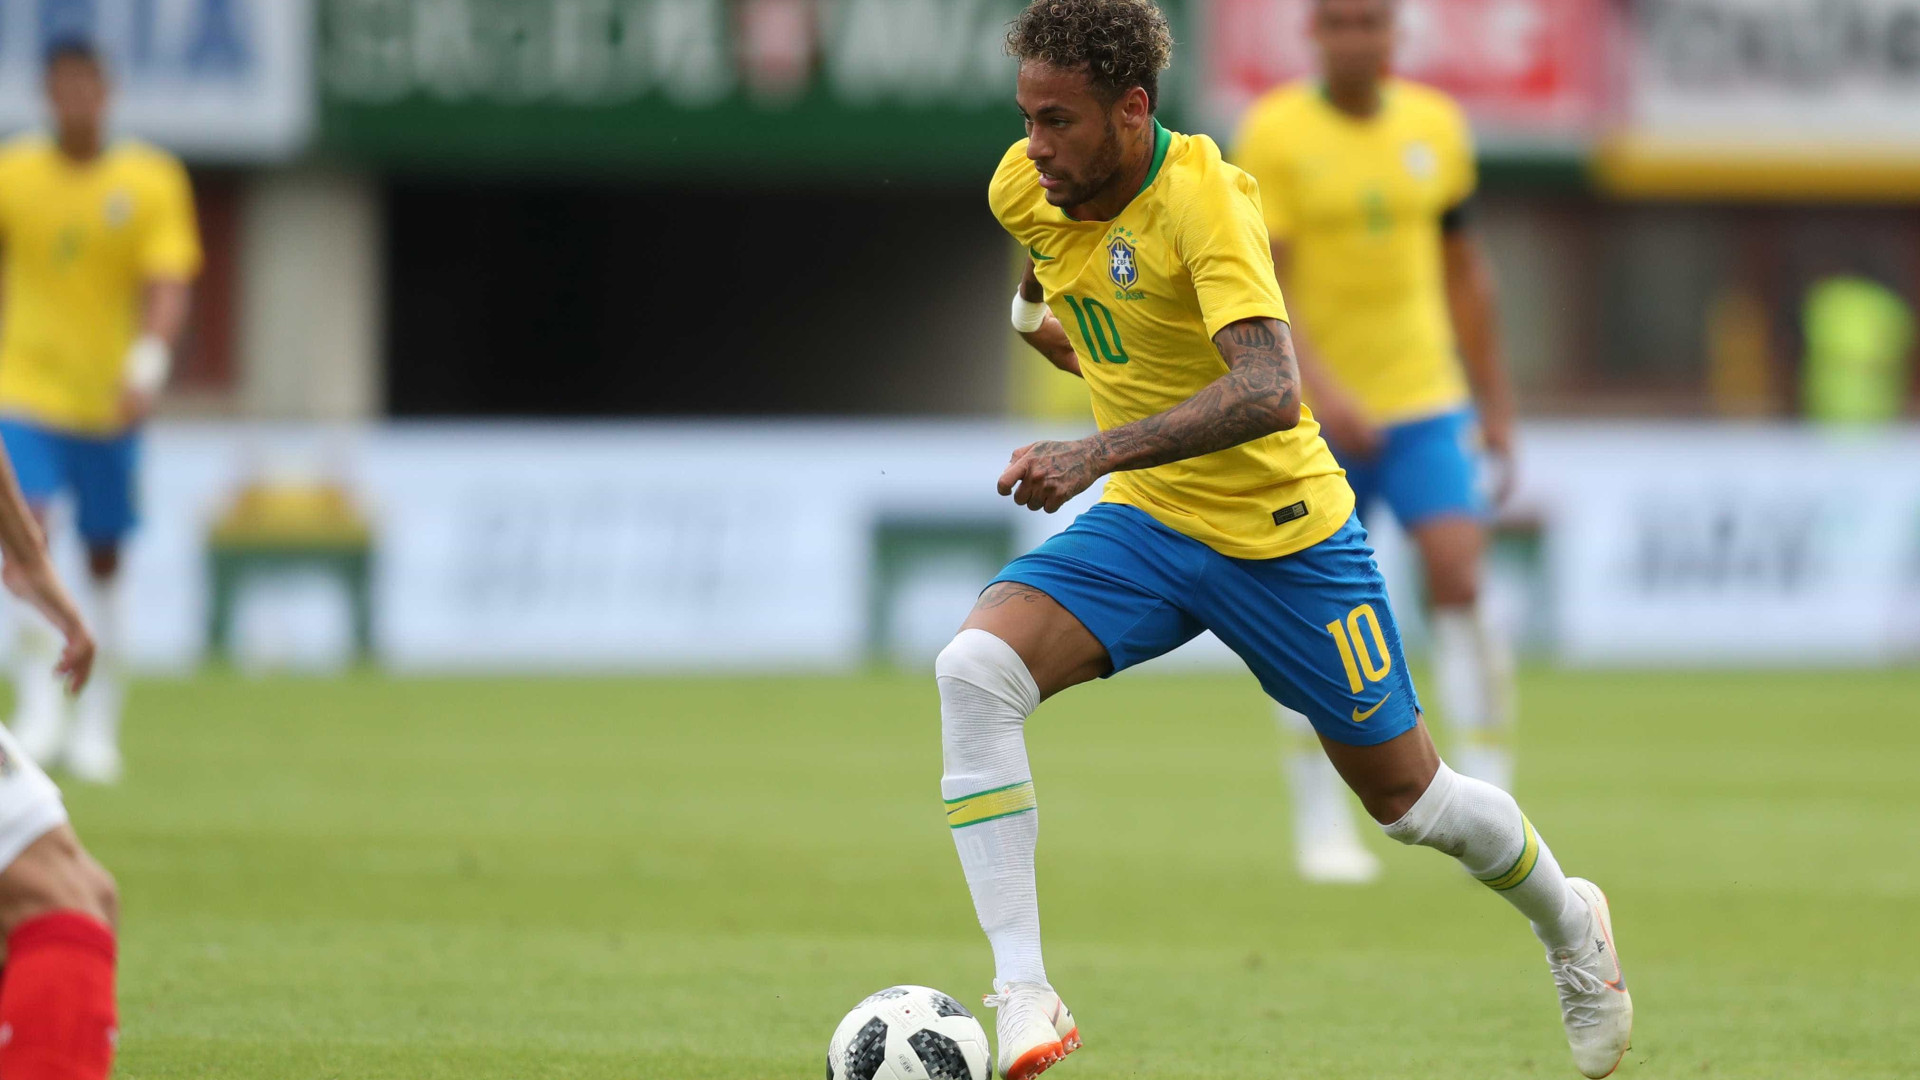 O desconcertante drible de Neymar visto de um ângulo diferente; vídeo